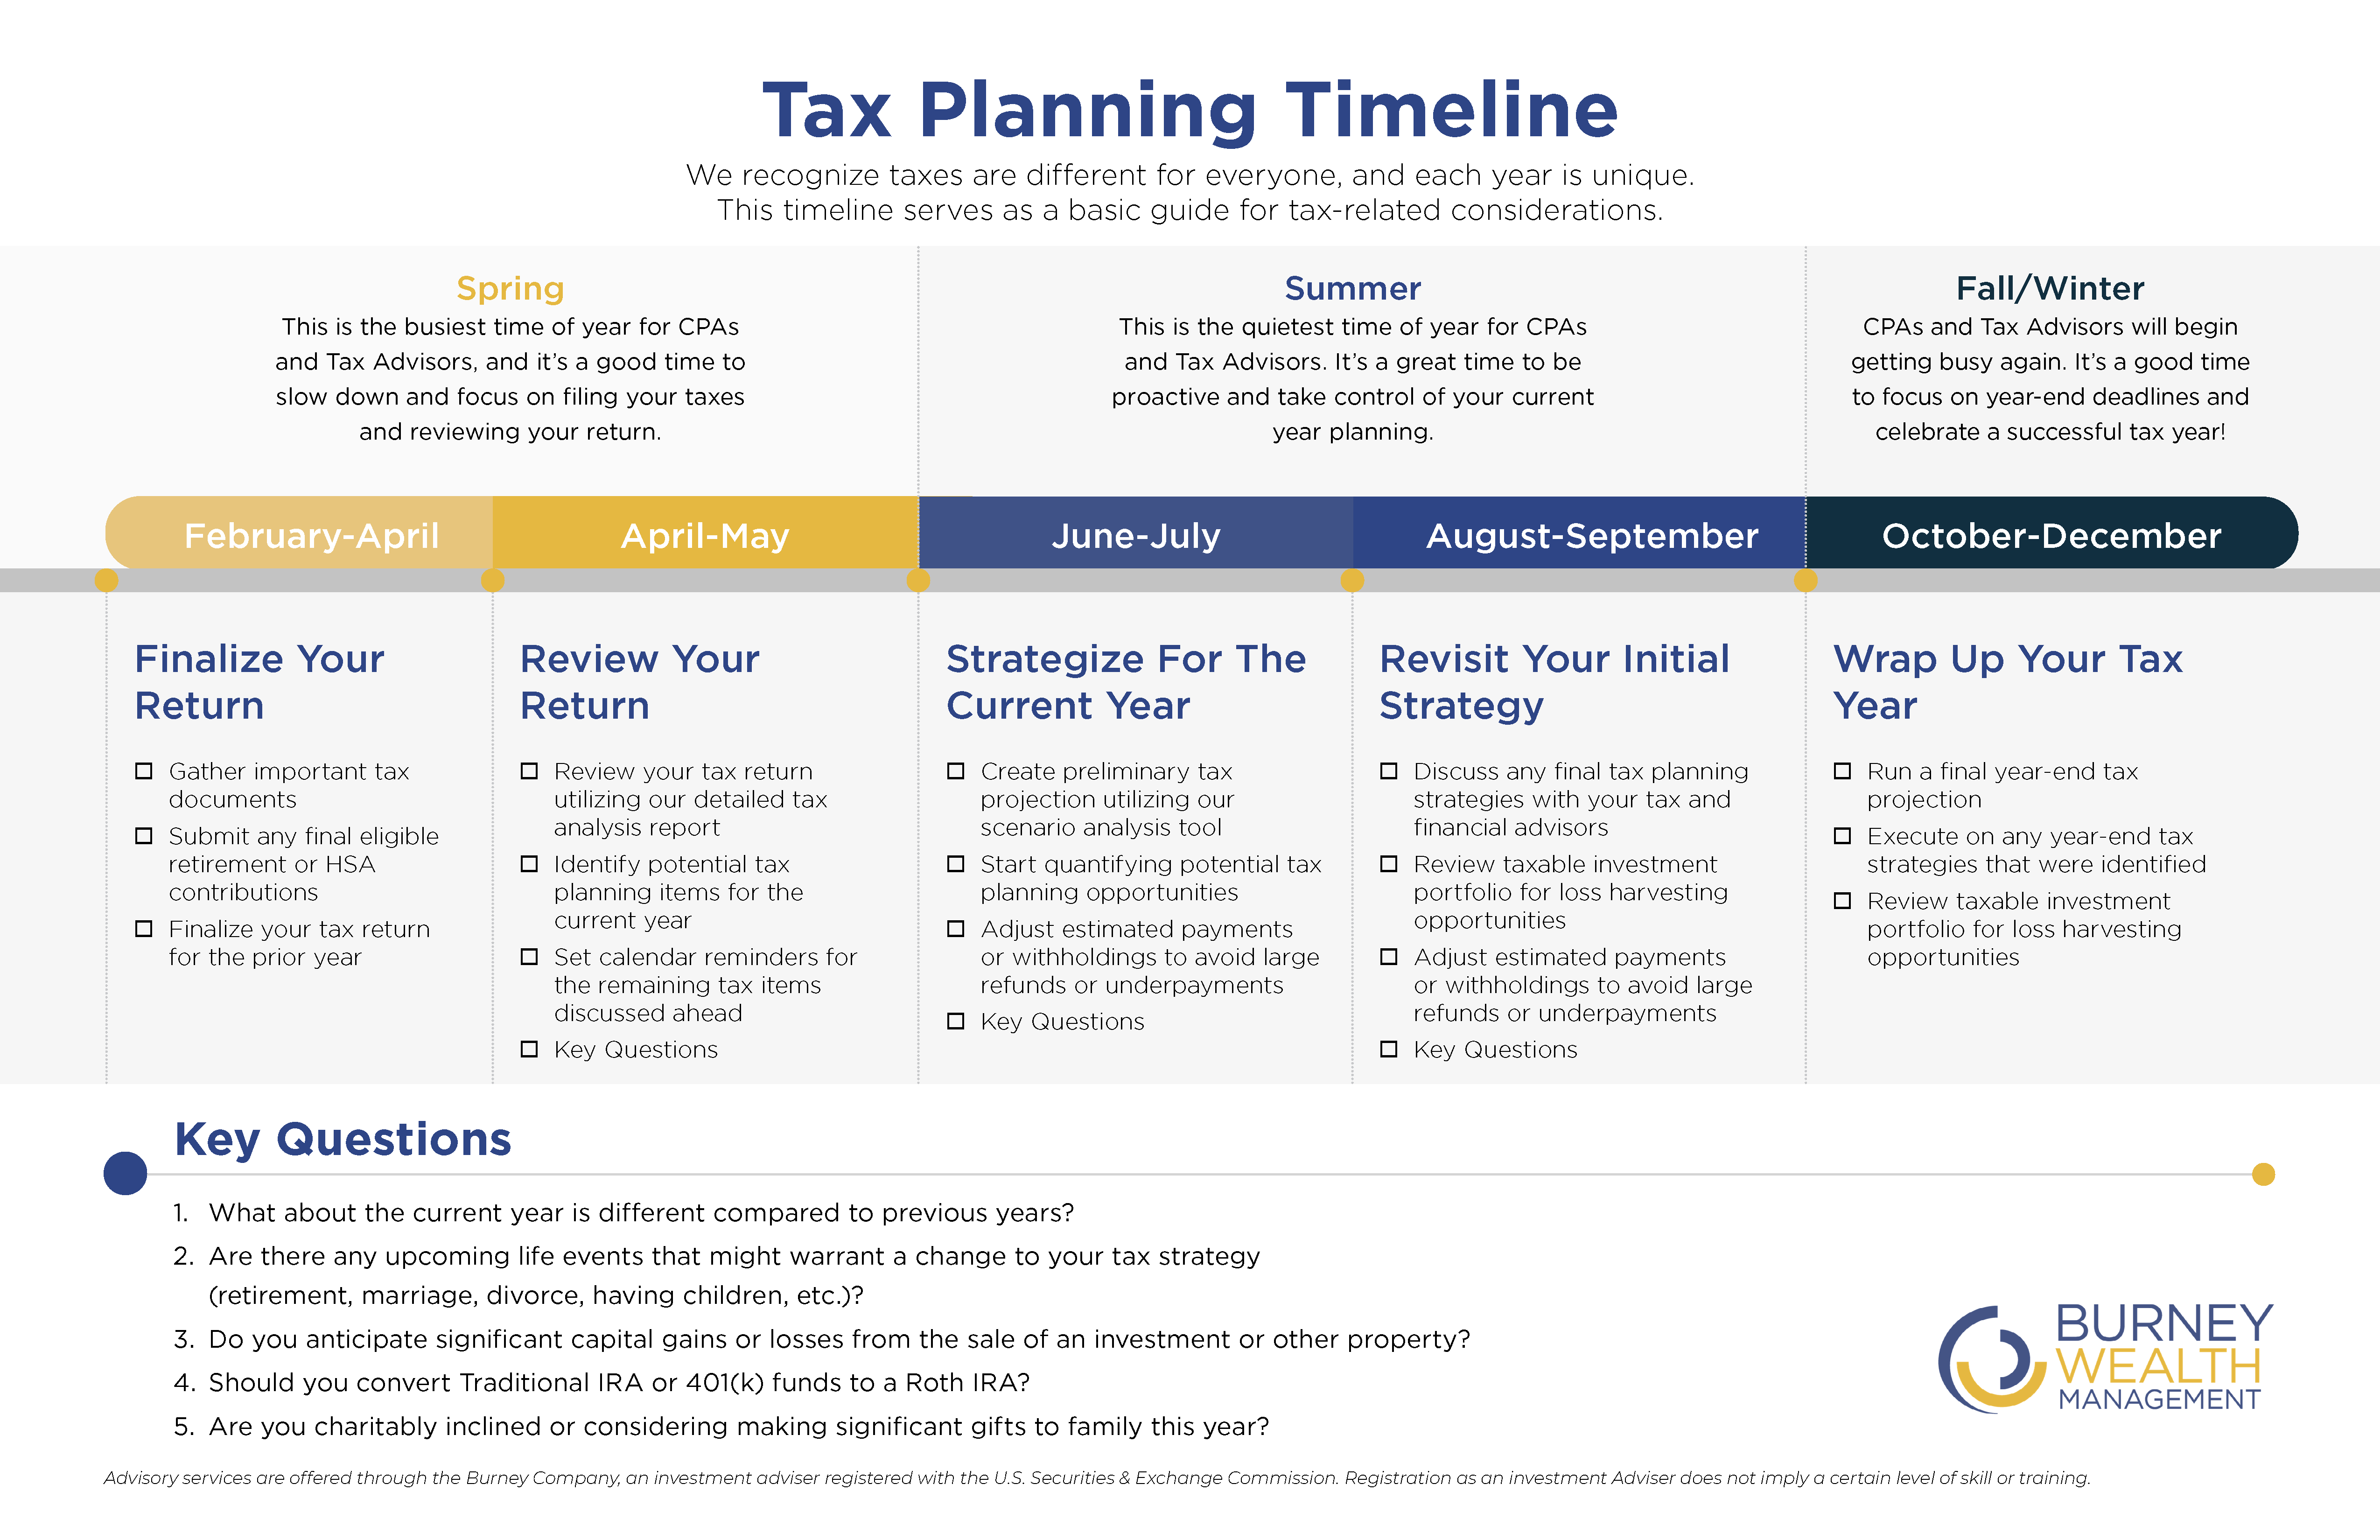 tax-planning-timeline-burney-wealth